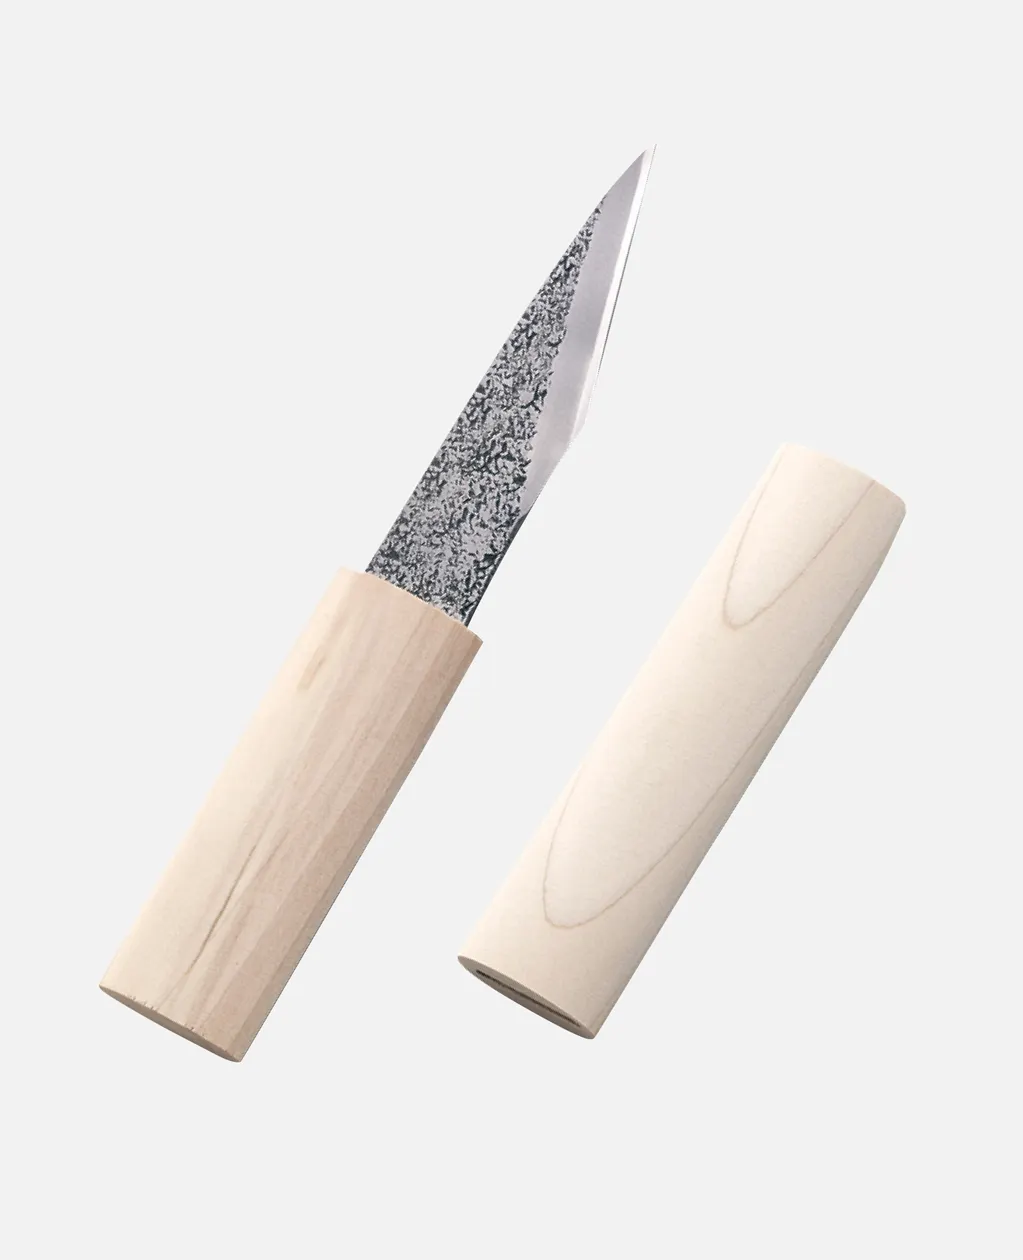 Yüksek kaliteli japon işçiliği bıçak japonya'da yapılan